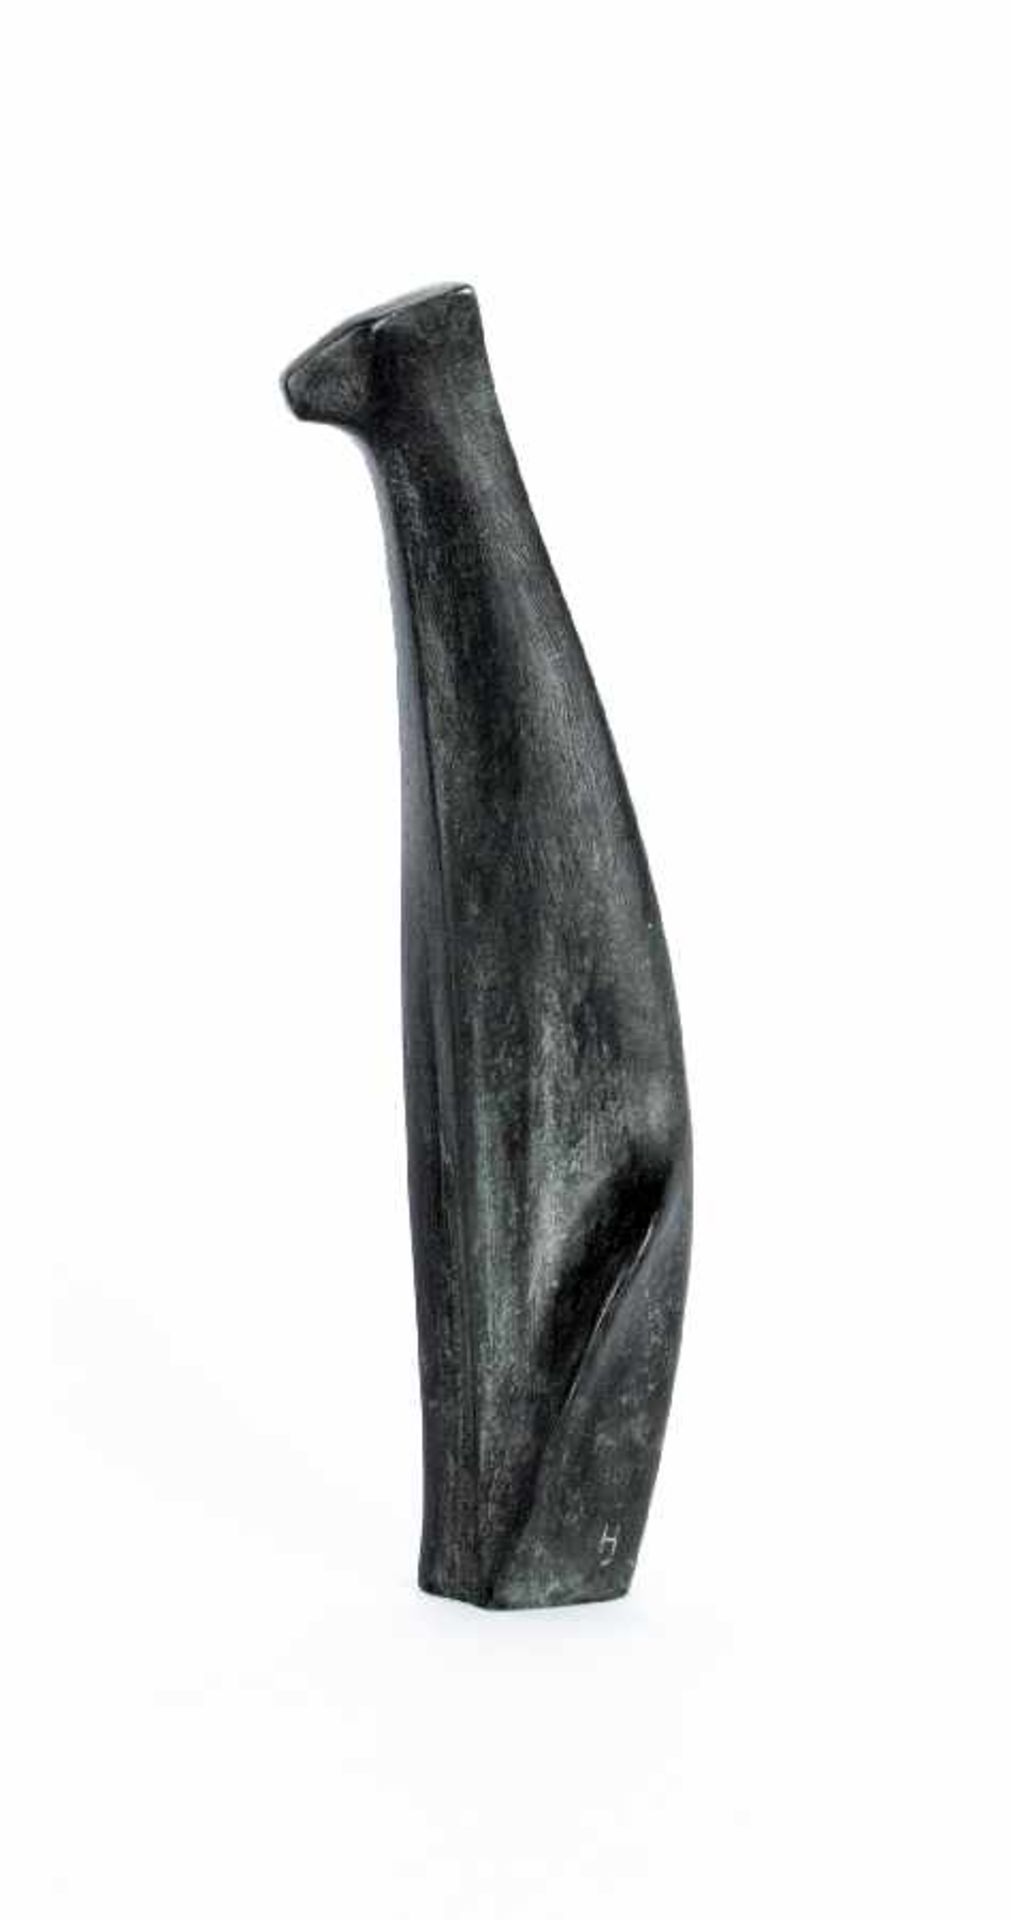 Bildhauer der Mitte des 20. Jh. Katze Weissmetall; H 29,5 cm; bezeichnet "HJ 4" Sculptor of the